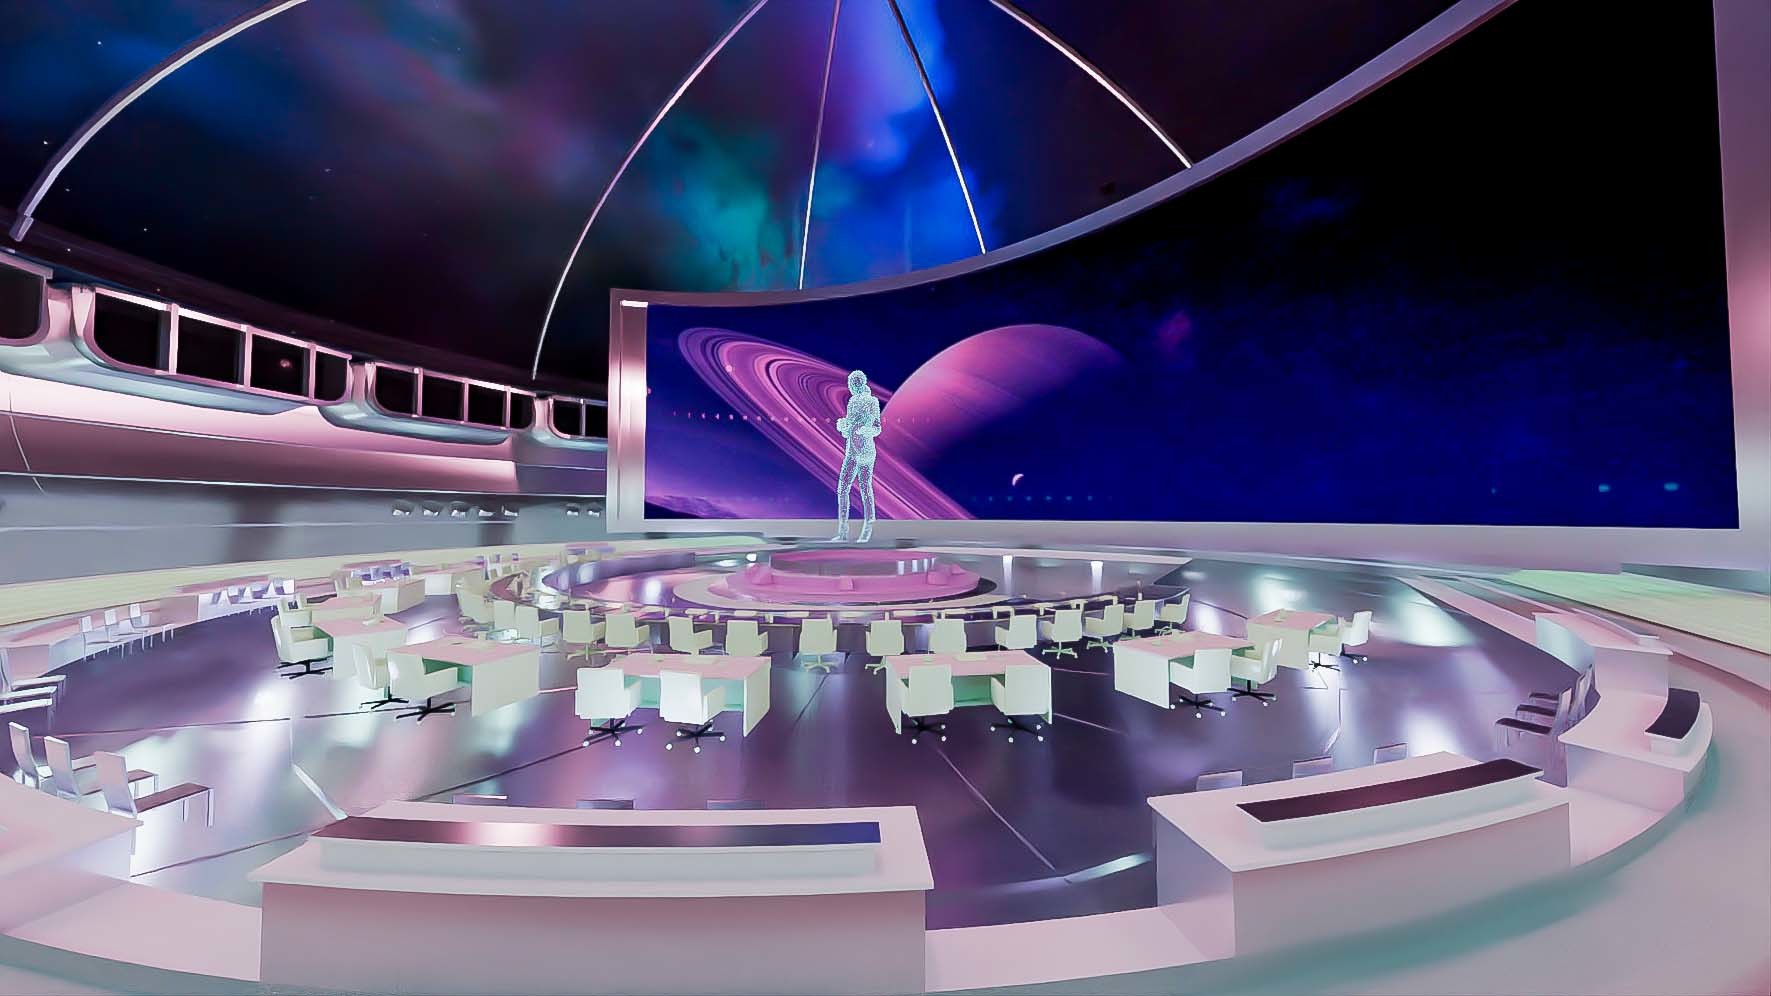 这是一张科幻风格的虚拟现实场景图，中央有人影，周围是现代化控制台和宇宙星球背景。